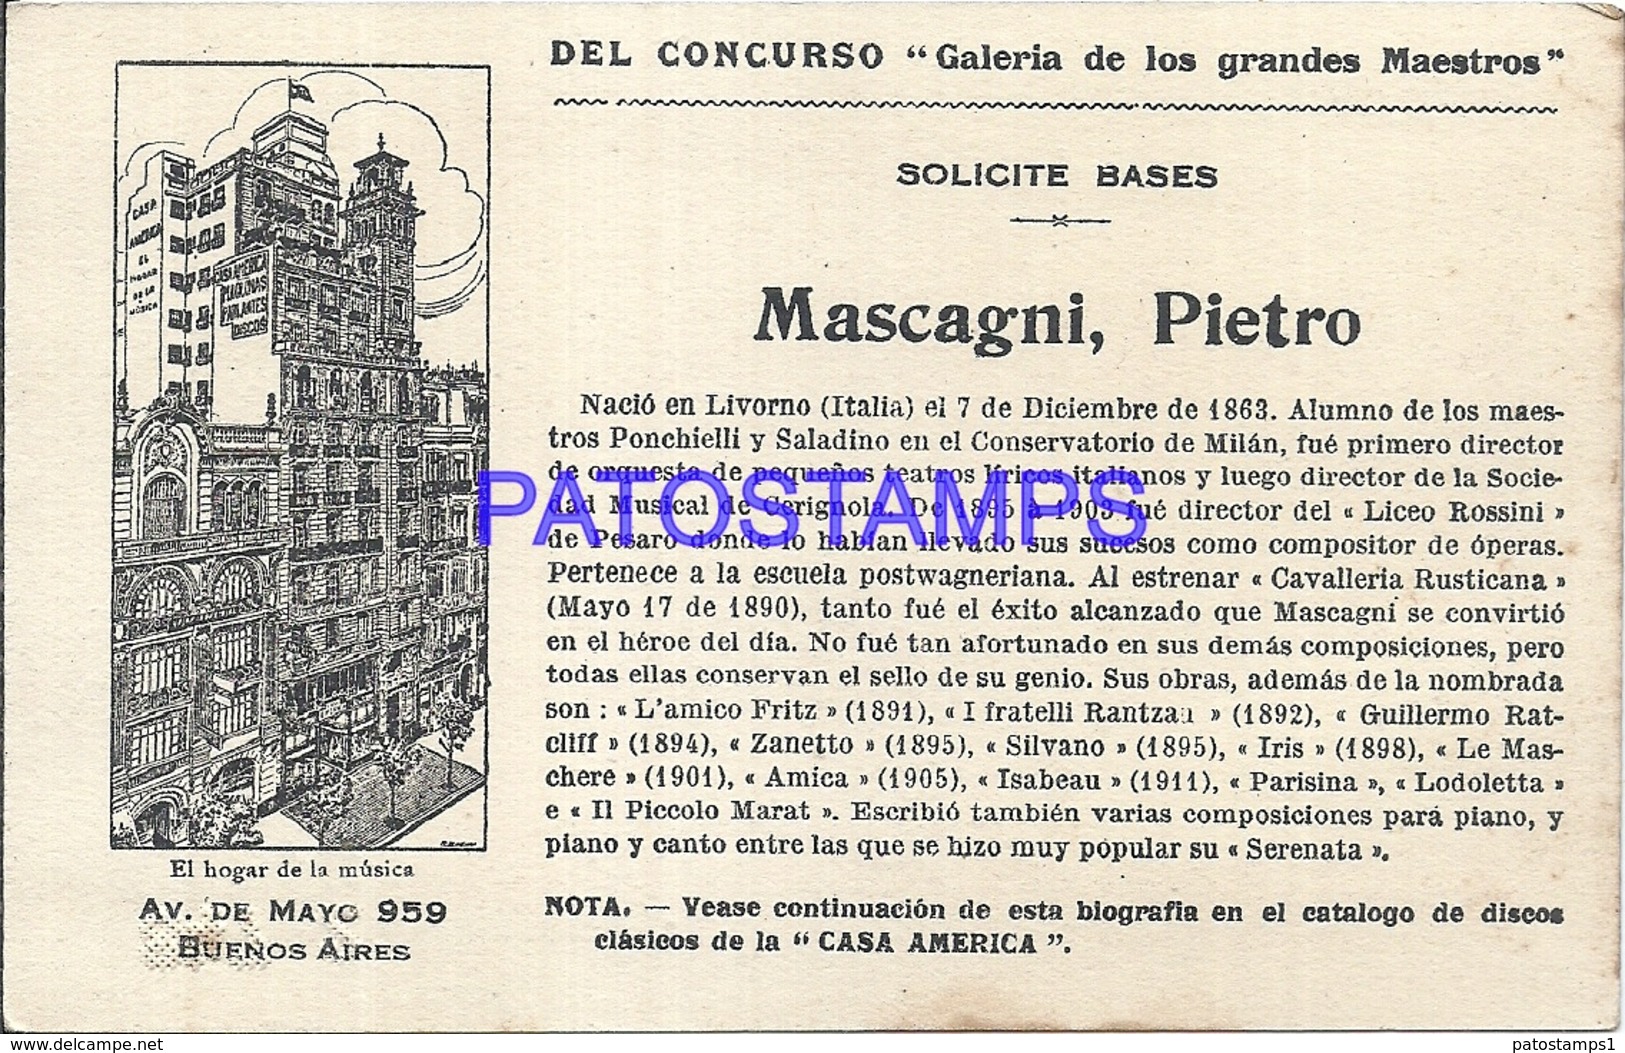 91002 PUBLICTY COMMERCIAL CASA AMERICA EL HOGAR DE LA MUSICA BS AS ARTIST MASCAGNI PIETRO LIRICO NO POSTAL POSTCARD - Advertising